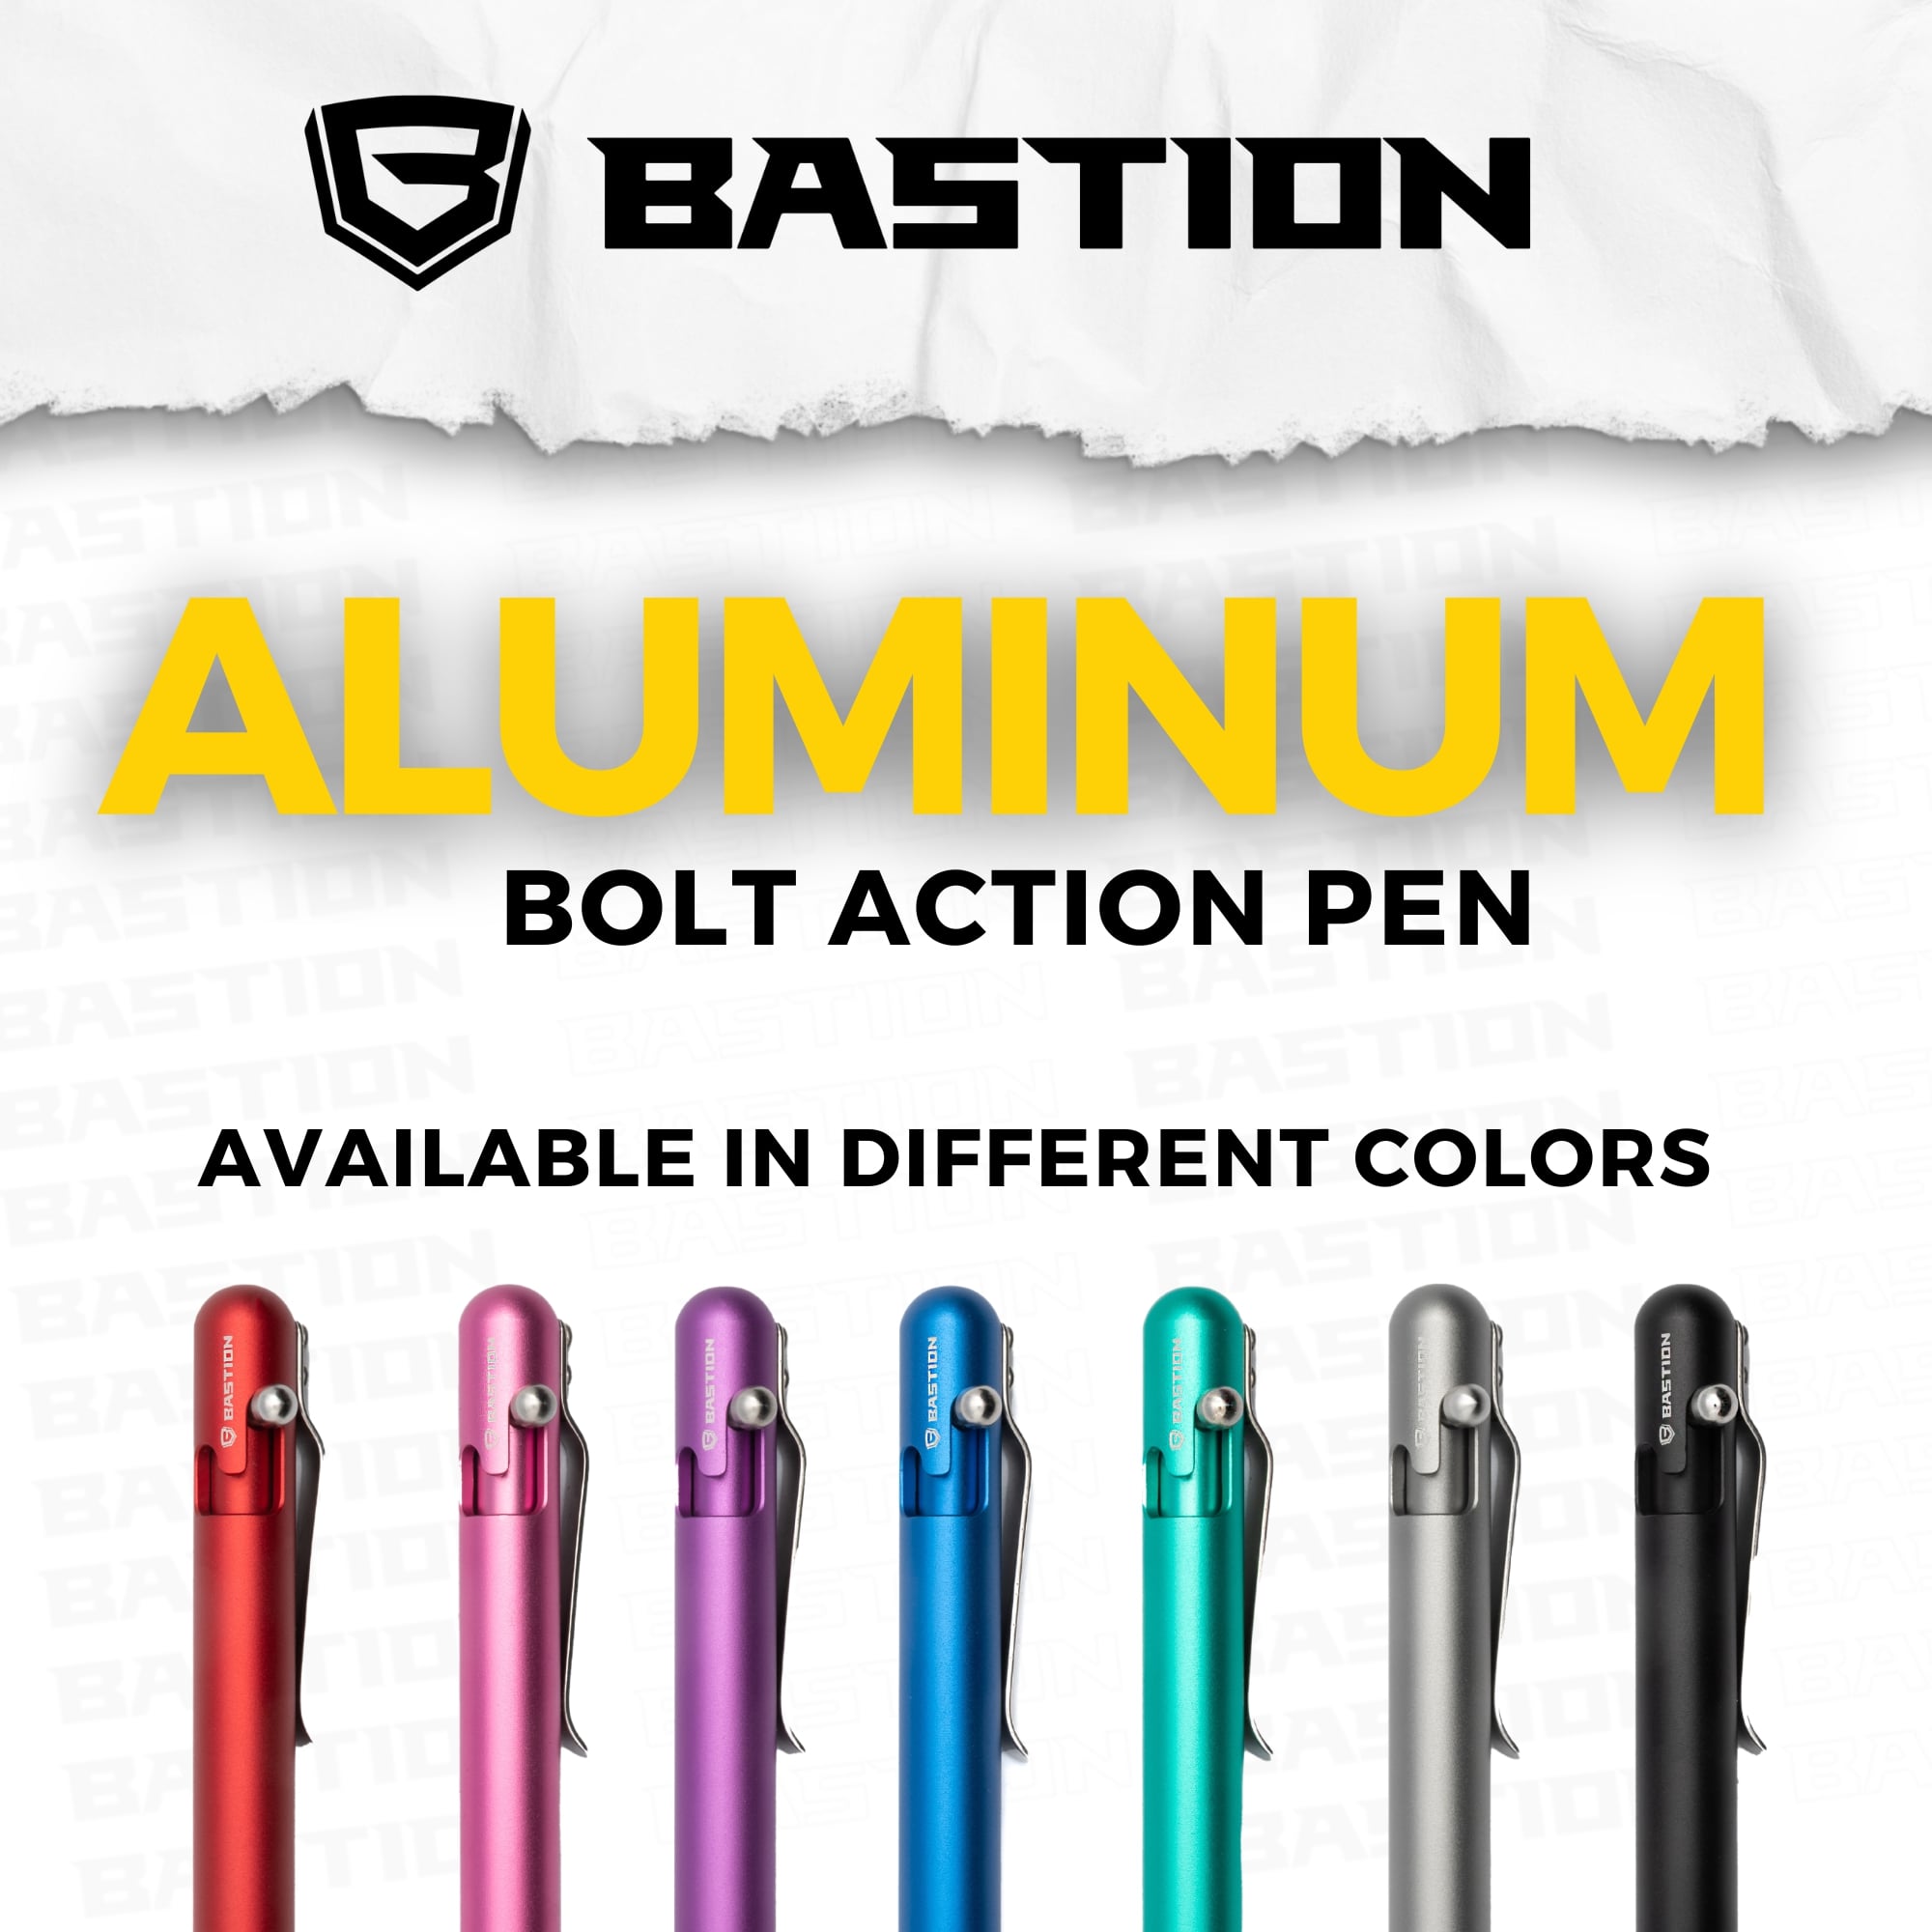 62% OFF-SALE-Aluminum - Bolt Action Pen by Bastion®